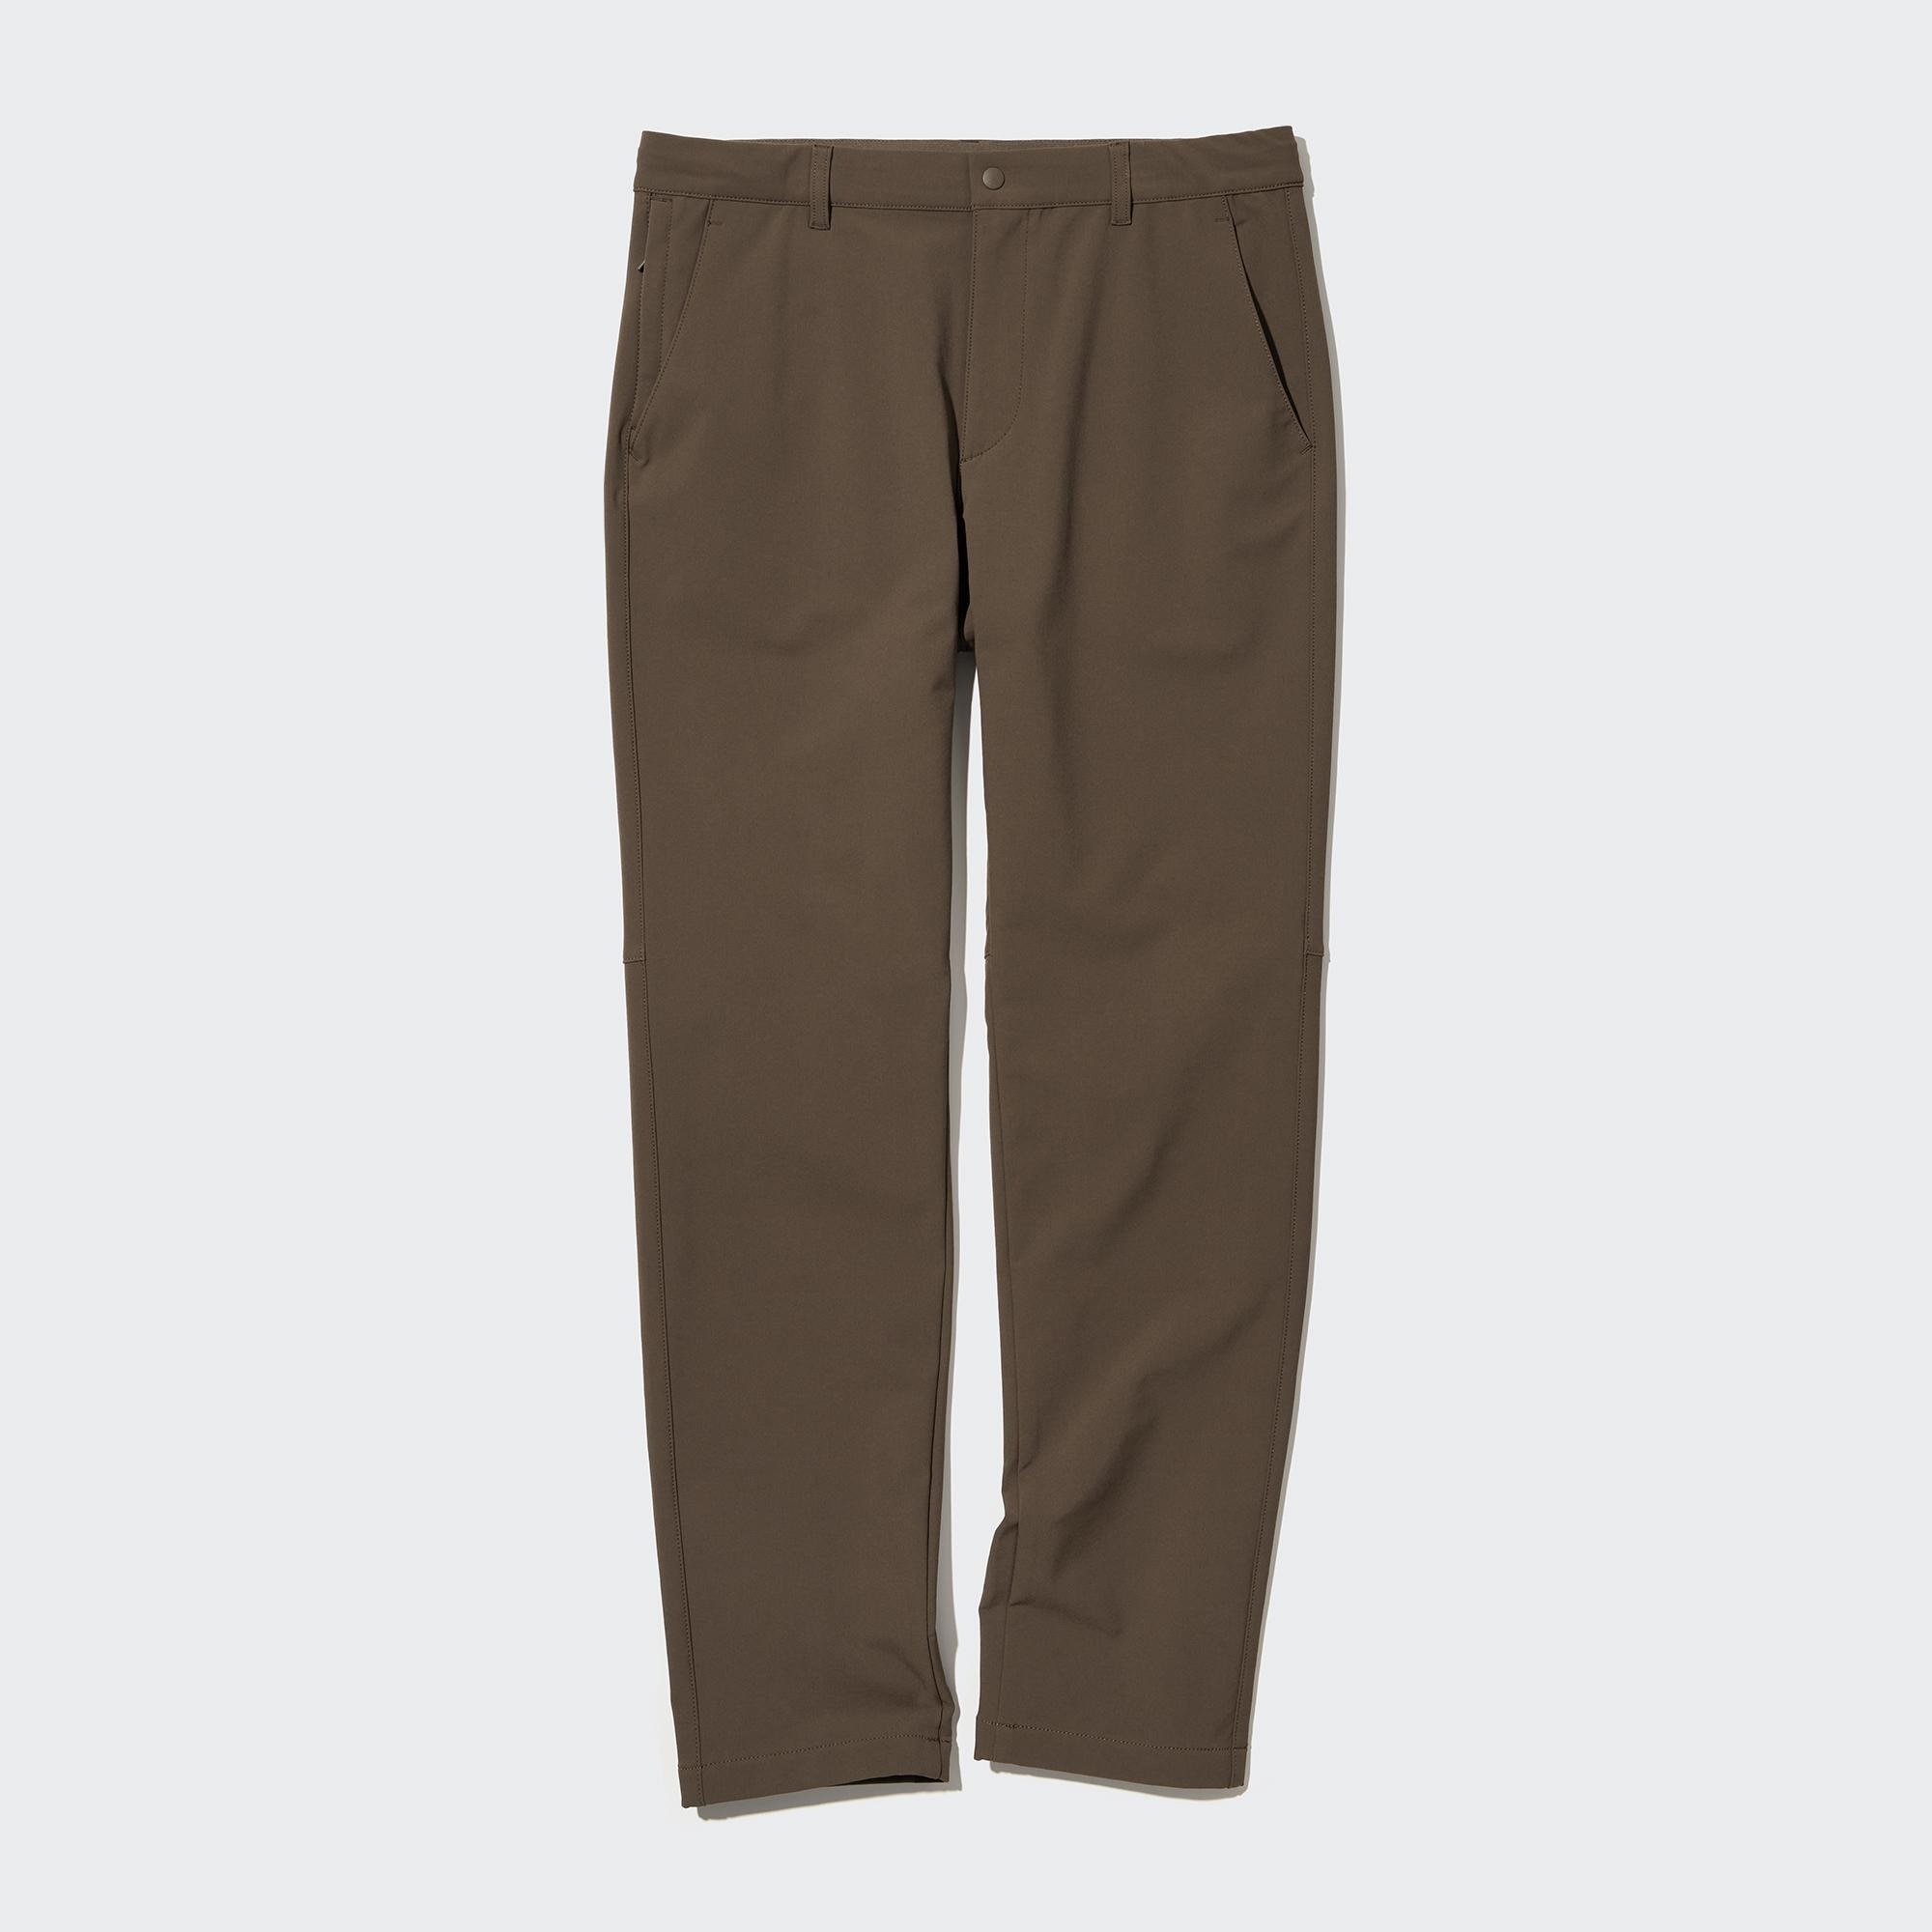 Брюки UNIQLO Heattech легкие, коричневый брюки uniqlo heattech pile lined joggers long коричневый